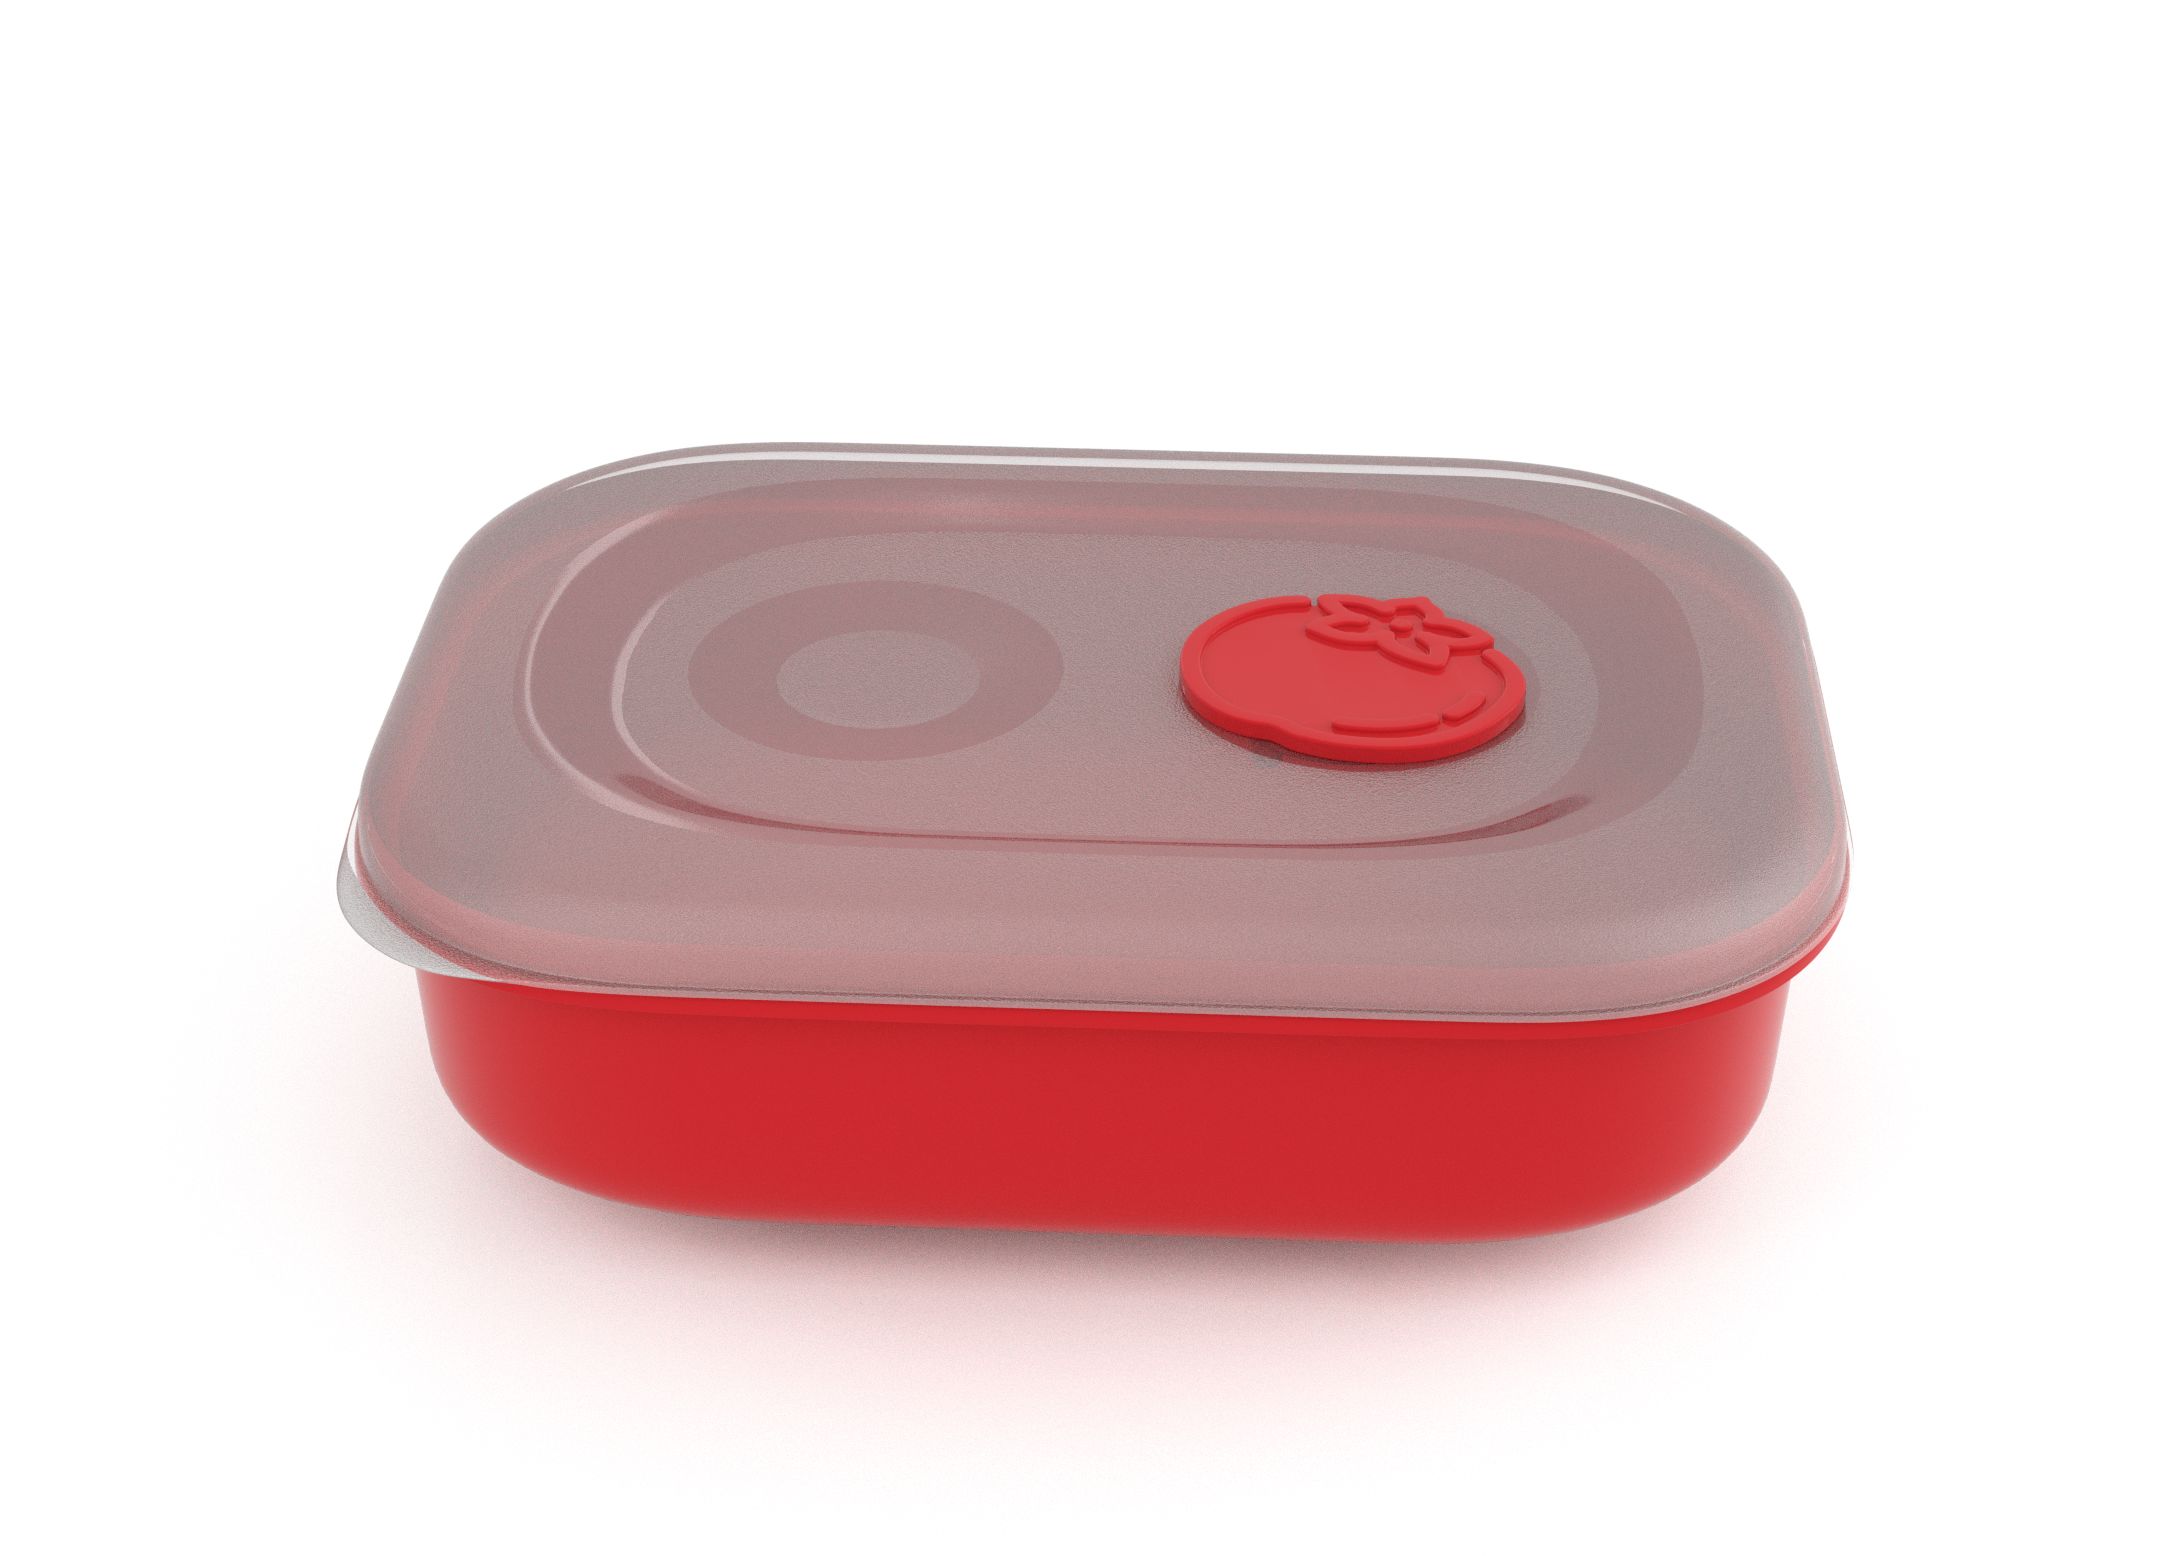 קופסת תמה לוק מלבנית 1.8 ליטר 9182 עם שסתום עגבניה אדום בהיר